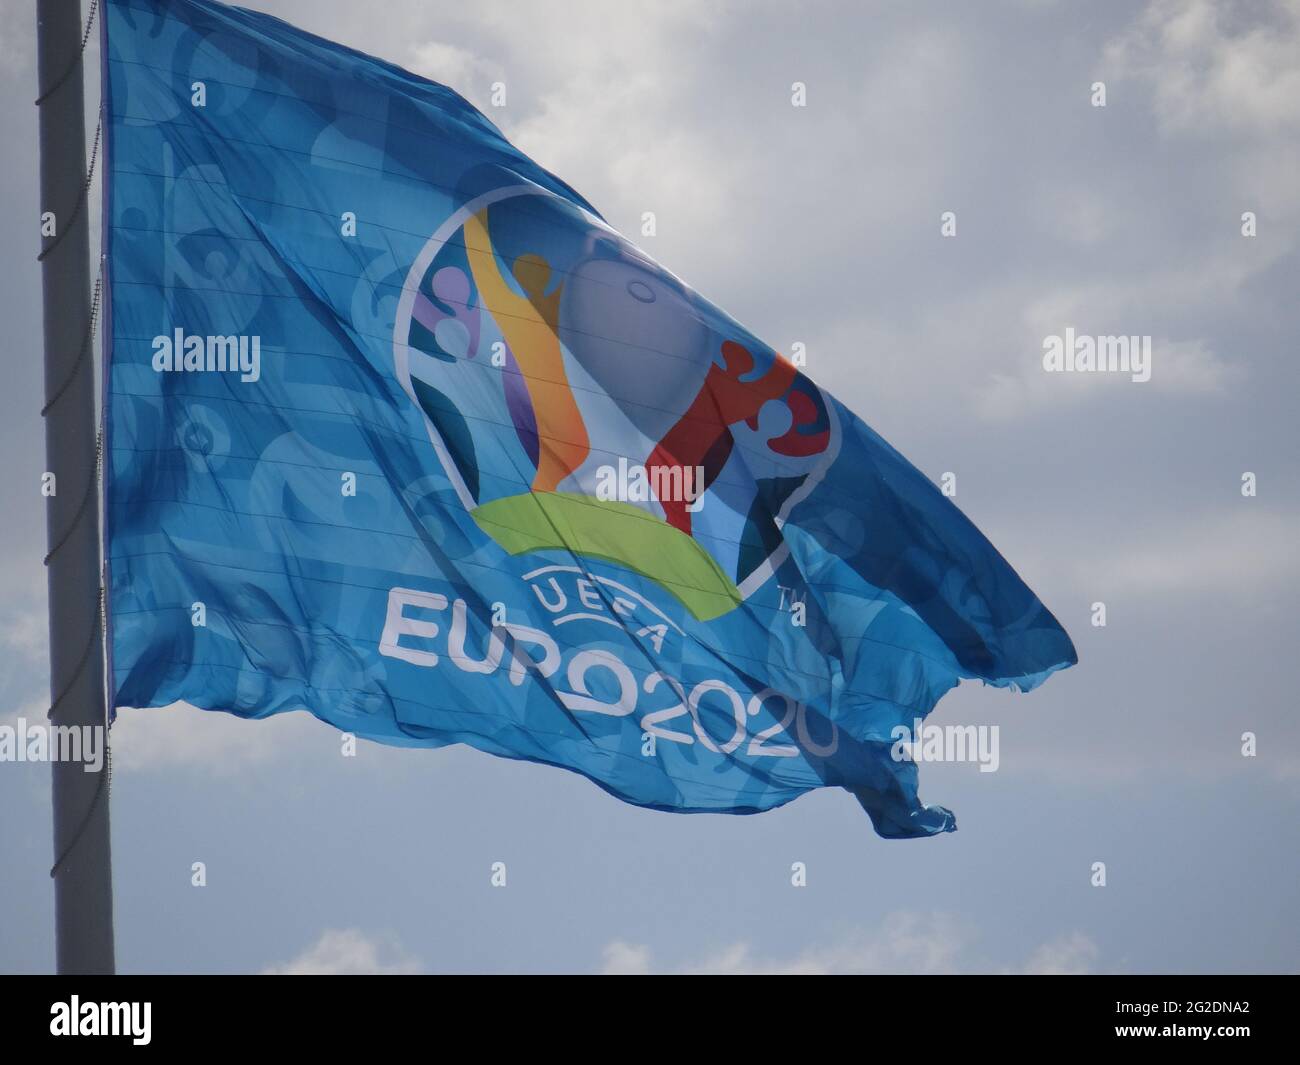 La bandiera gigante UEFA EURO 2020 è ambientato nella Gazprom Arena di San Pietroburgo, Russia. È quadrato è 600m, flagpole è 105m. La Gazprom Arena ospita alcune partite di Euro 2020 a San Pietroburgo, in Russia Foto Stock